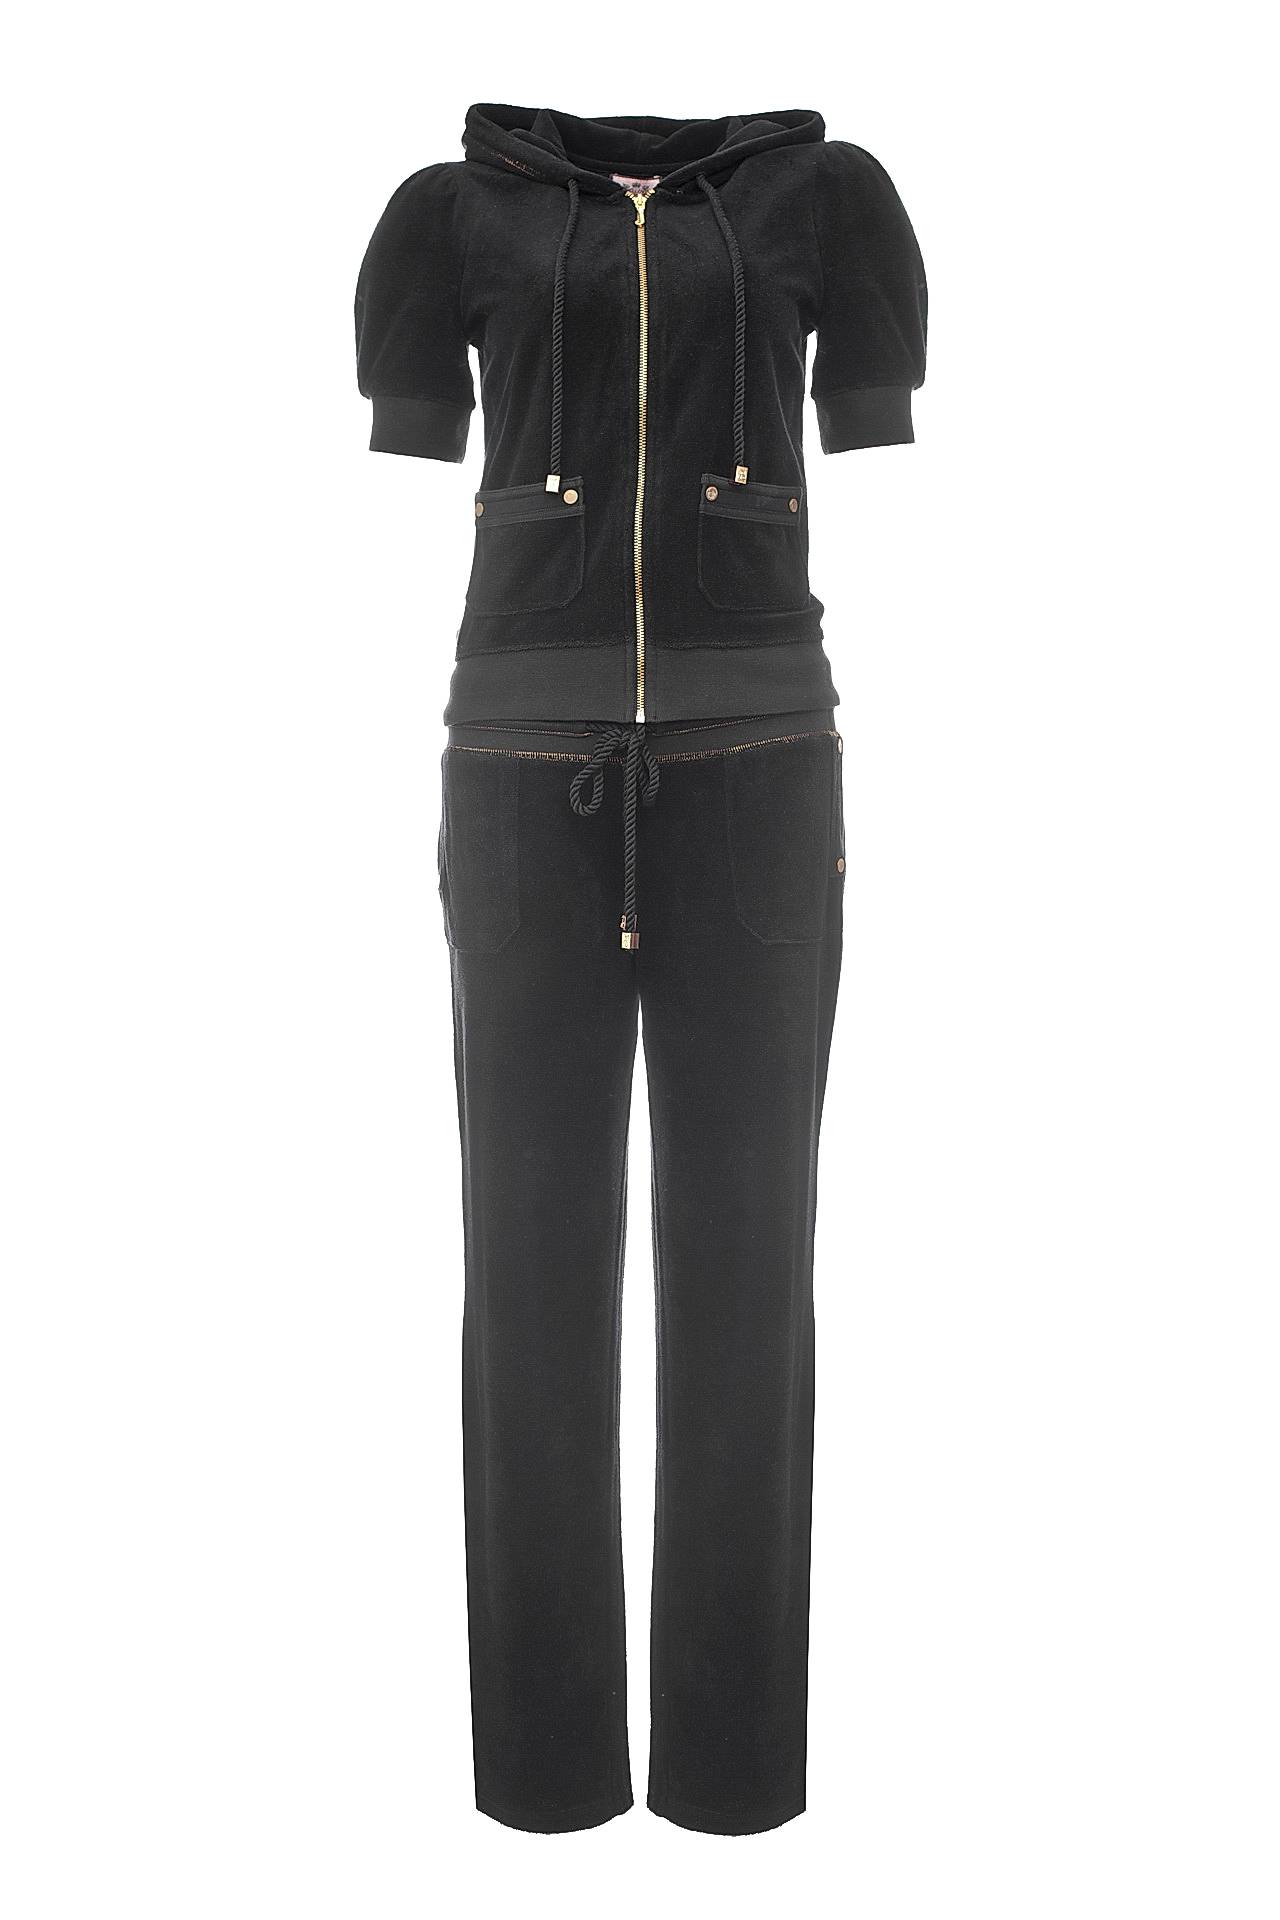 Одежда женская Костюм JUICY COUTURE (JGMU9688/9692/10.1). Купить за 11750 руб.